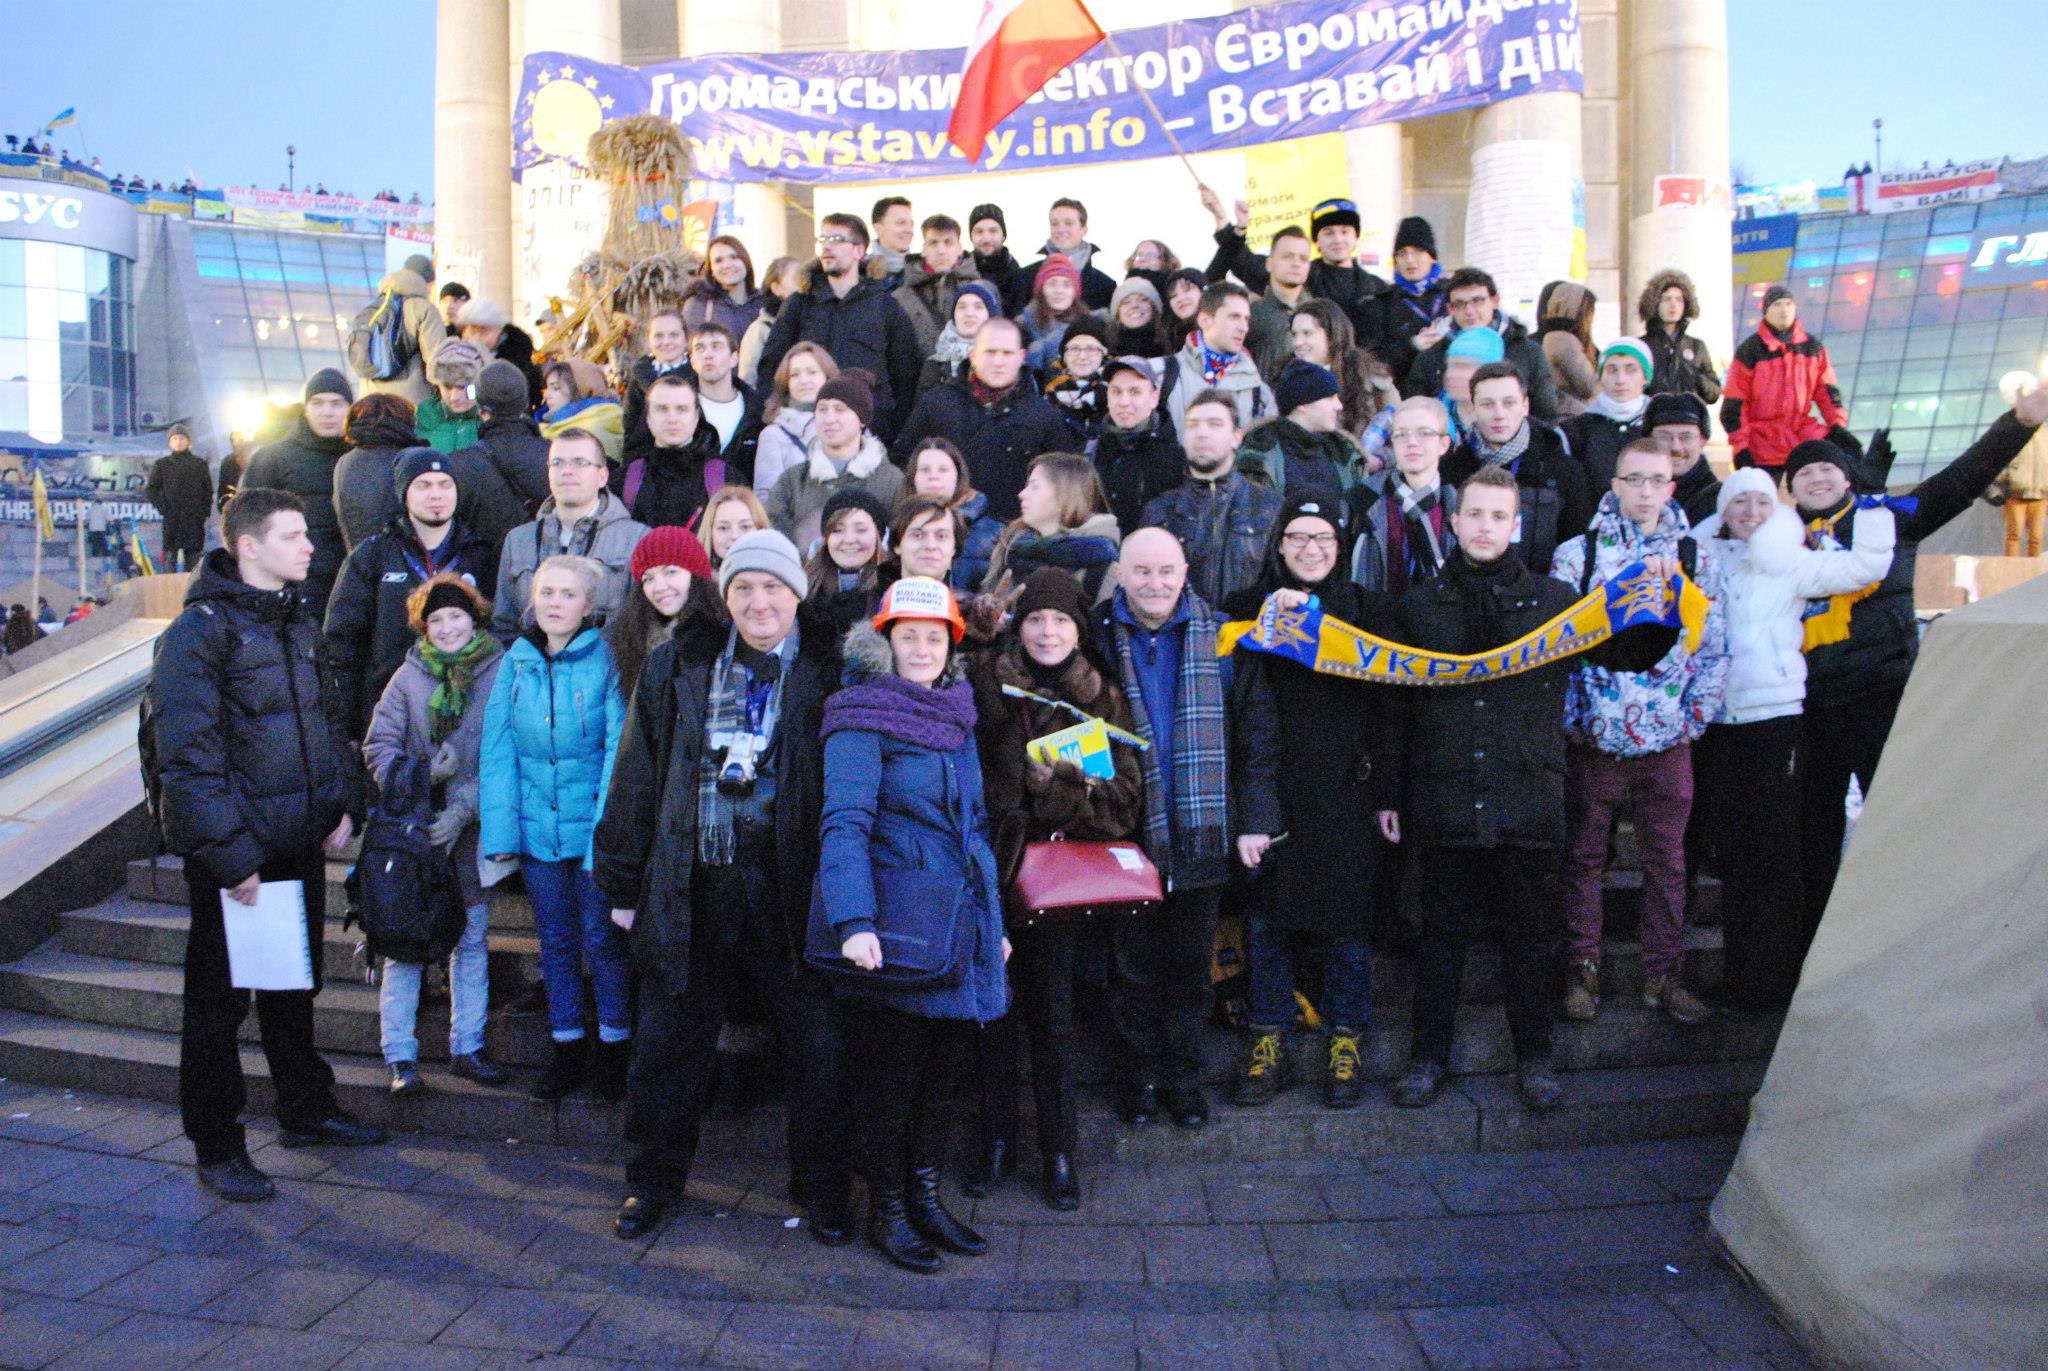 Grupa studentów i pracowników SEW - badania Kijów 2013